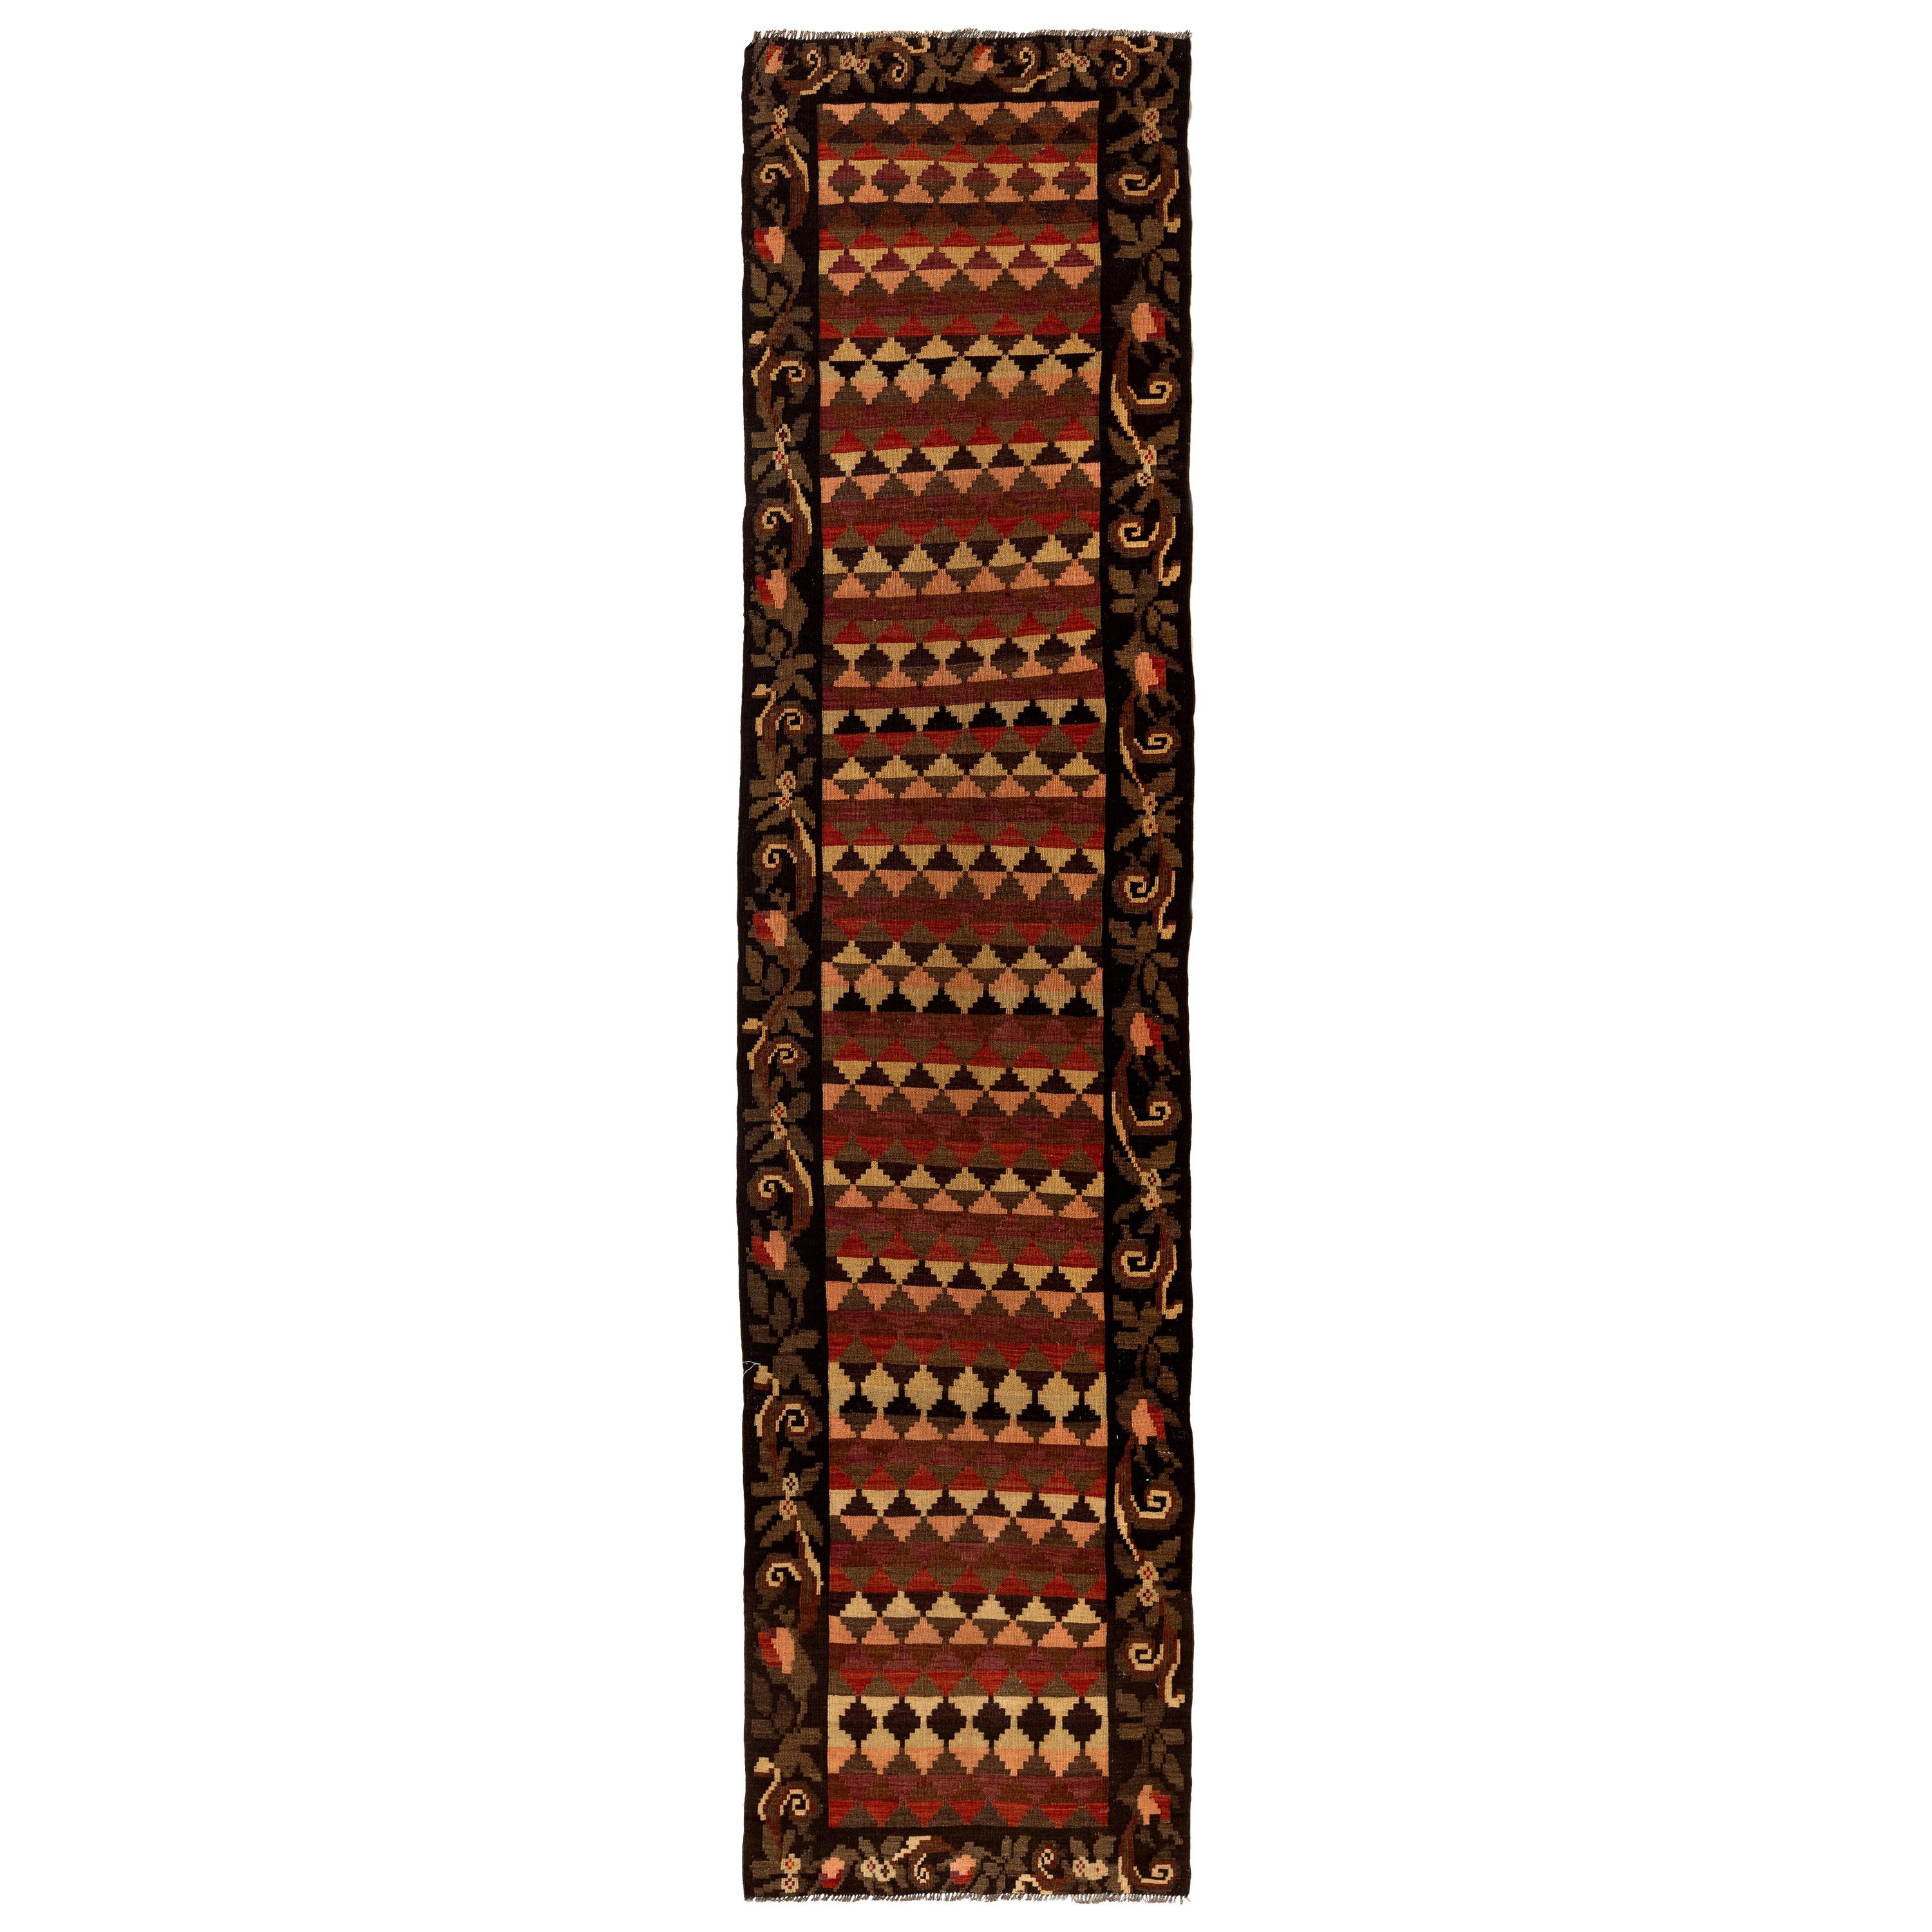 3 x 12.4 Ft Vintage Bessarabian Kilim, Handwoven Wool Runner Rug from Moldova